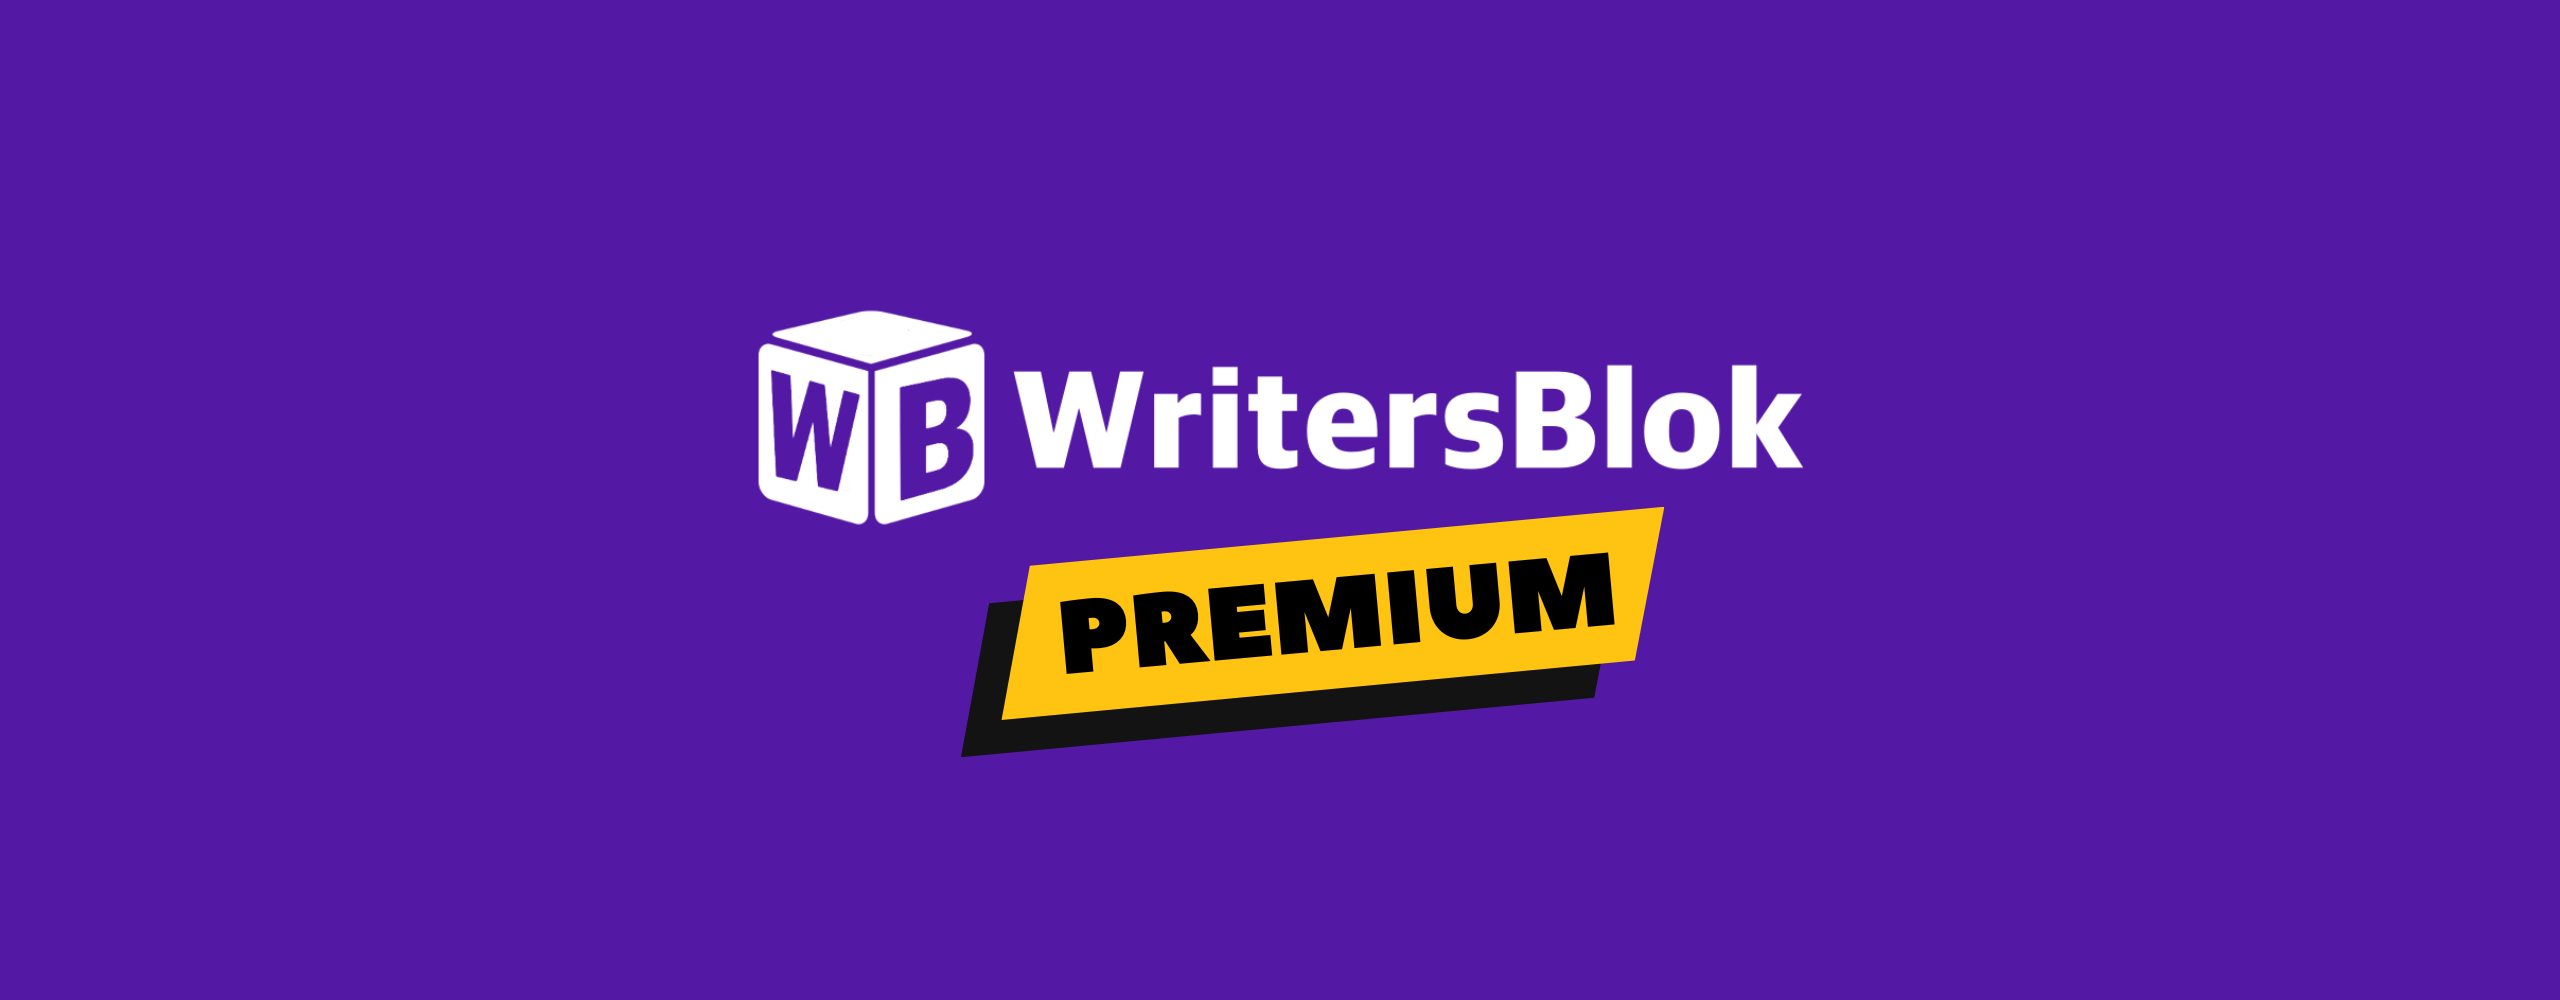 writersblok premium